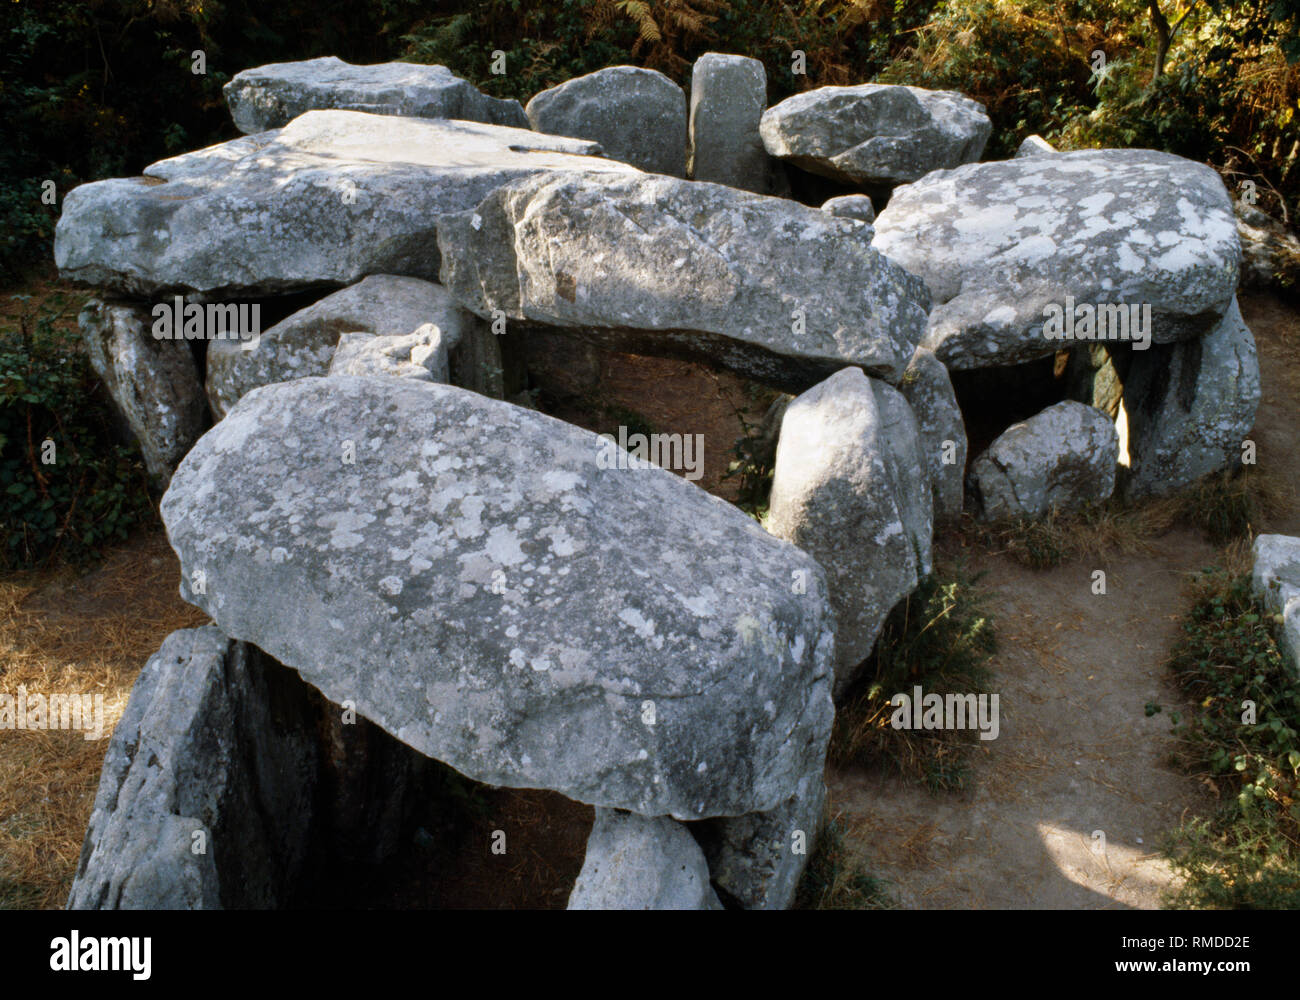 https://c8.alamy.com/compde/rmdd2e/anzeigen-nw-mit-freiliegenden-eingang-passage-kammern-der-man-croch-man-groh-t-formig-neolithische-passage-grave-quiberon-carnac-bretagne-frankreich-rmdd2e.jpg